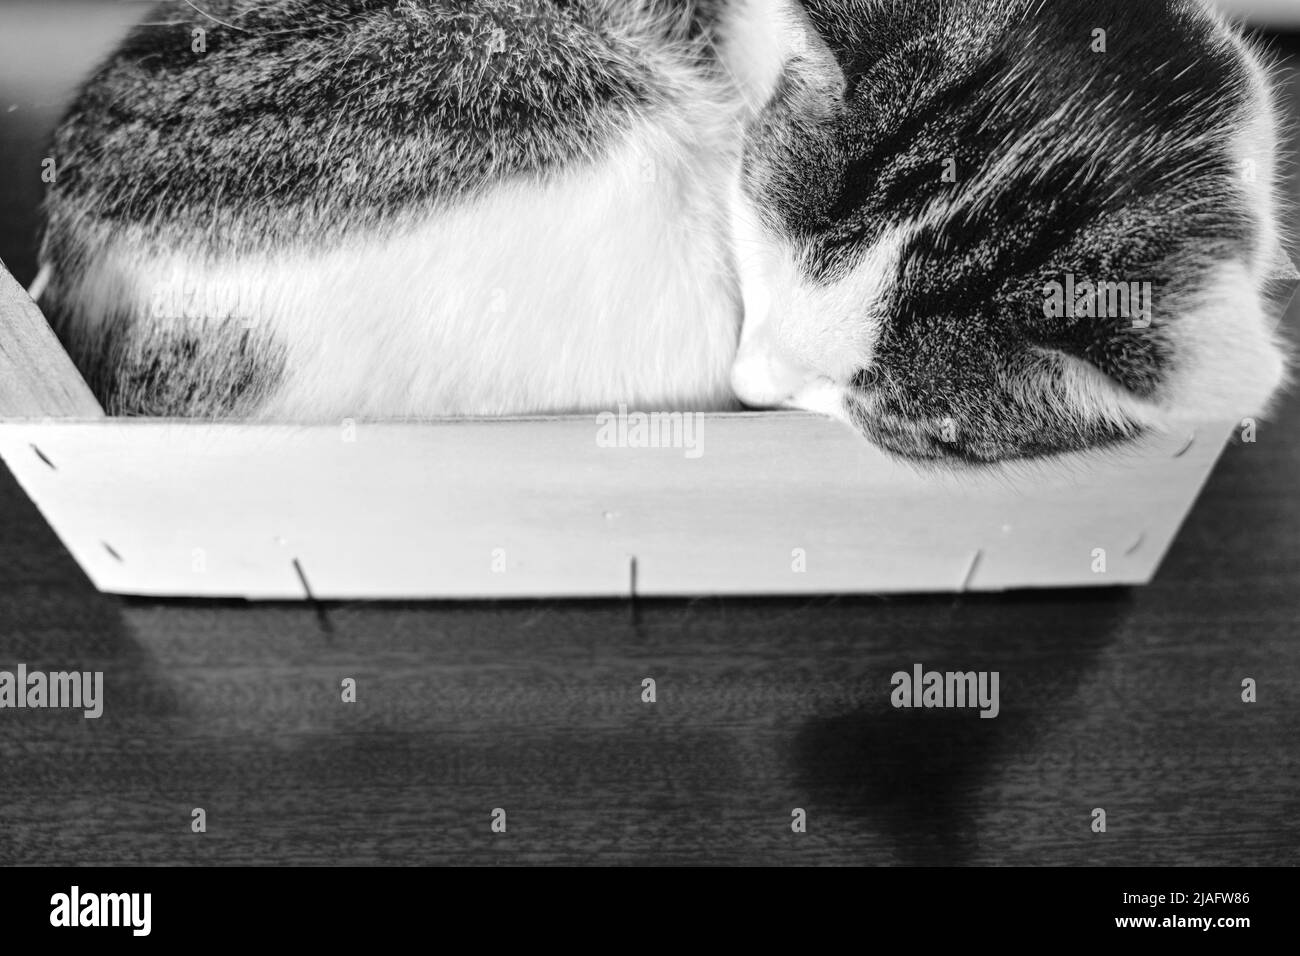 Un gatto domestico sleos arricciato in una cassa di legno. Foto Stock